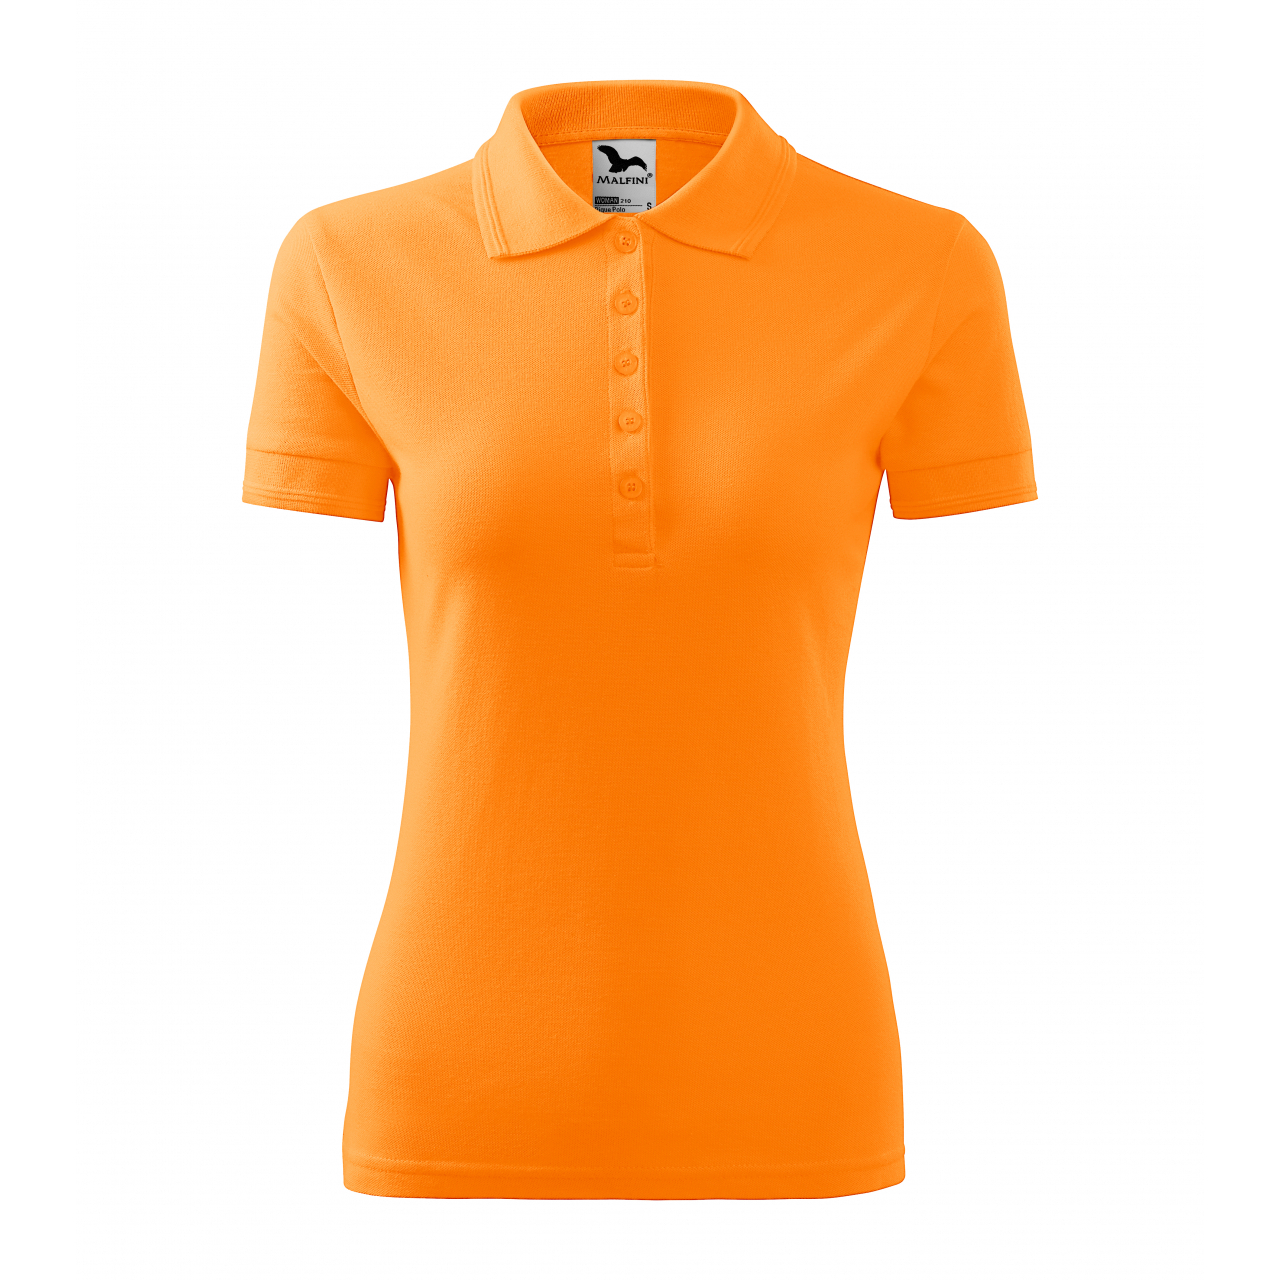 Polokošile dámská Malfini Pique Polo - světle oranžová, XL